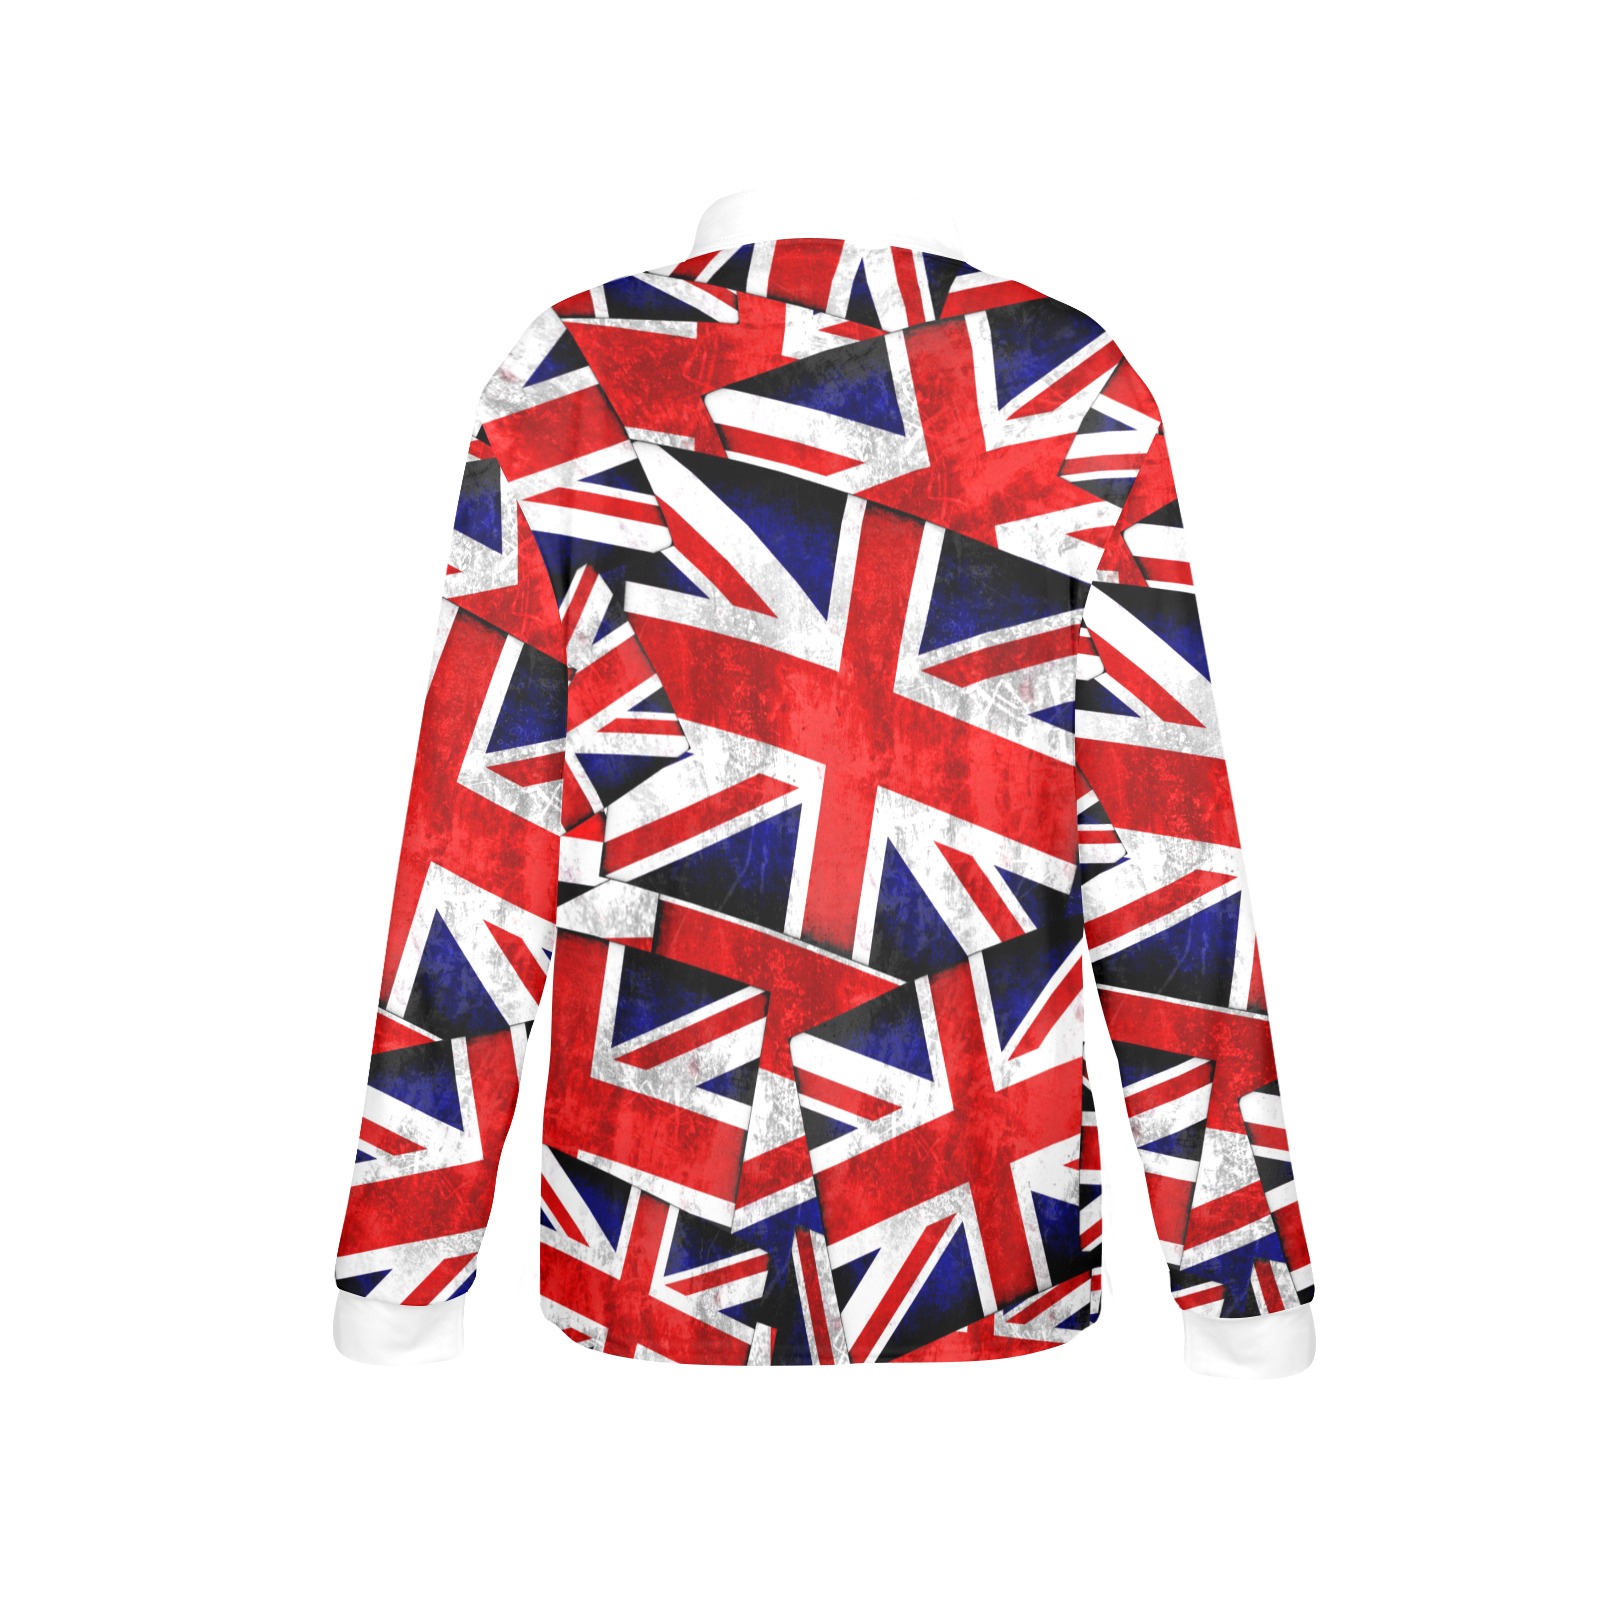 Union Jack British UK Flag / White Women's Long Sleeve Polo Shirt (Model T73)